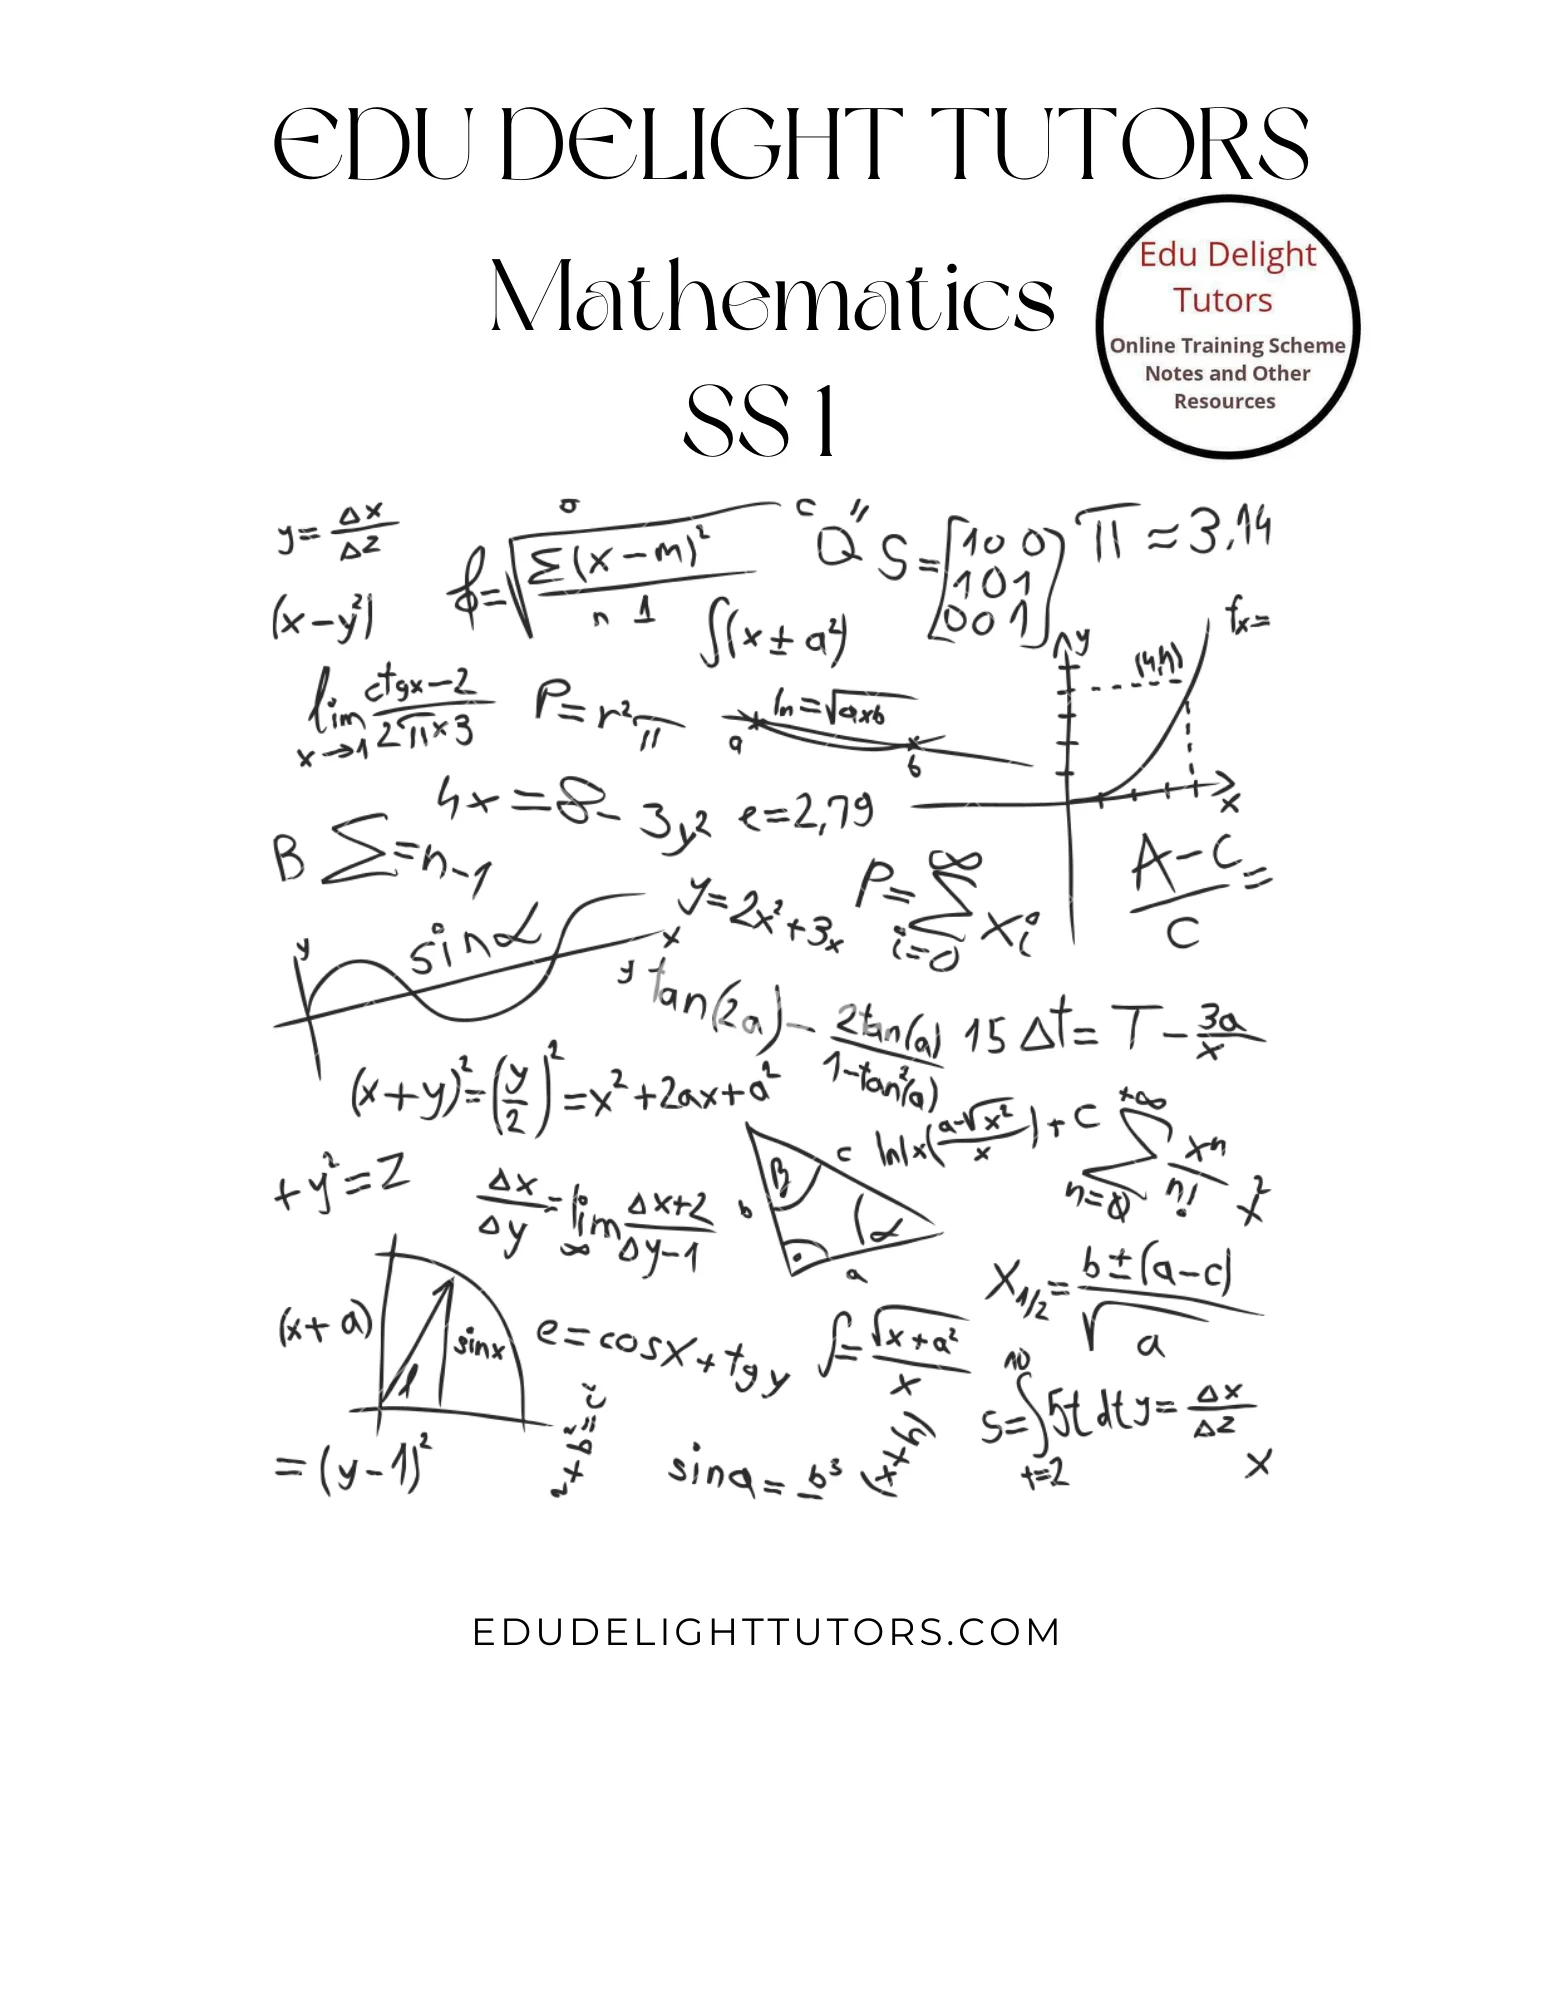 Primary 2 Mathematics Curriculum Notes